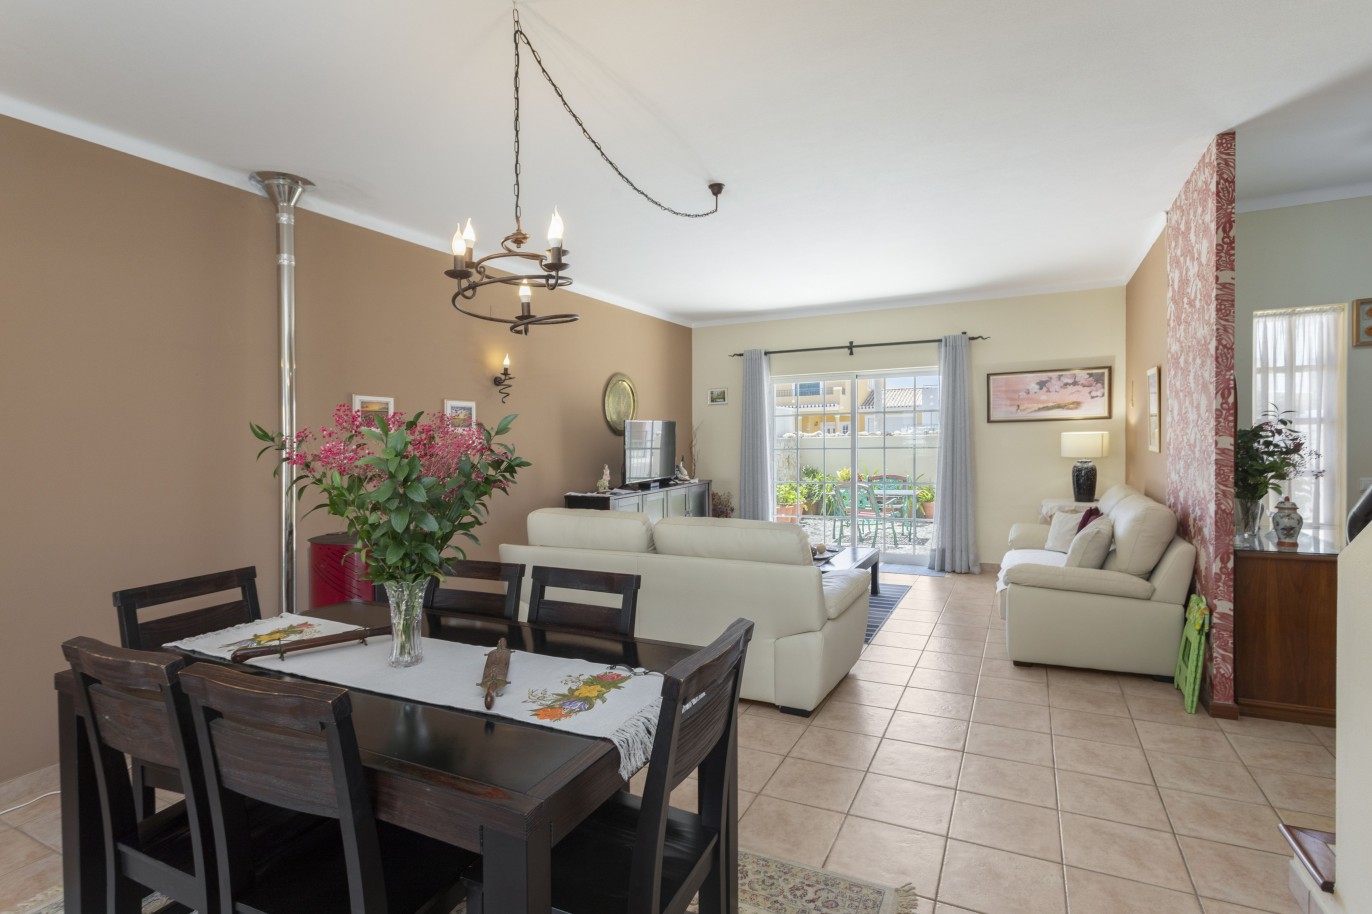 Villa de 3 dormitorios en venta en Porto de Mós, Algarve_233218